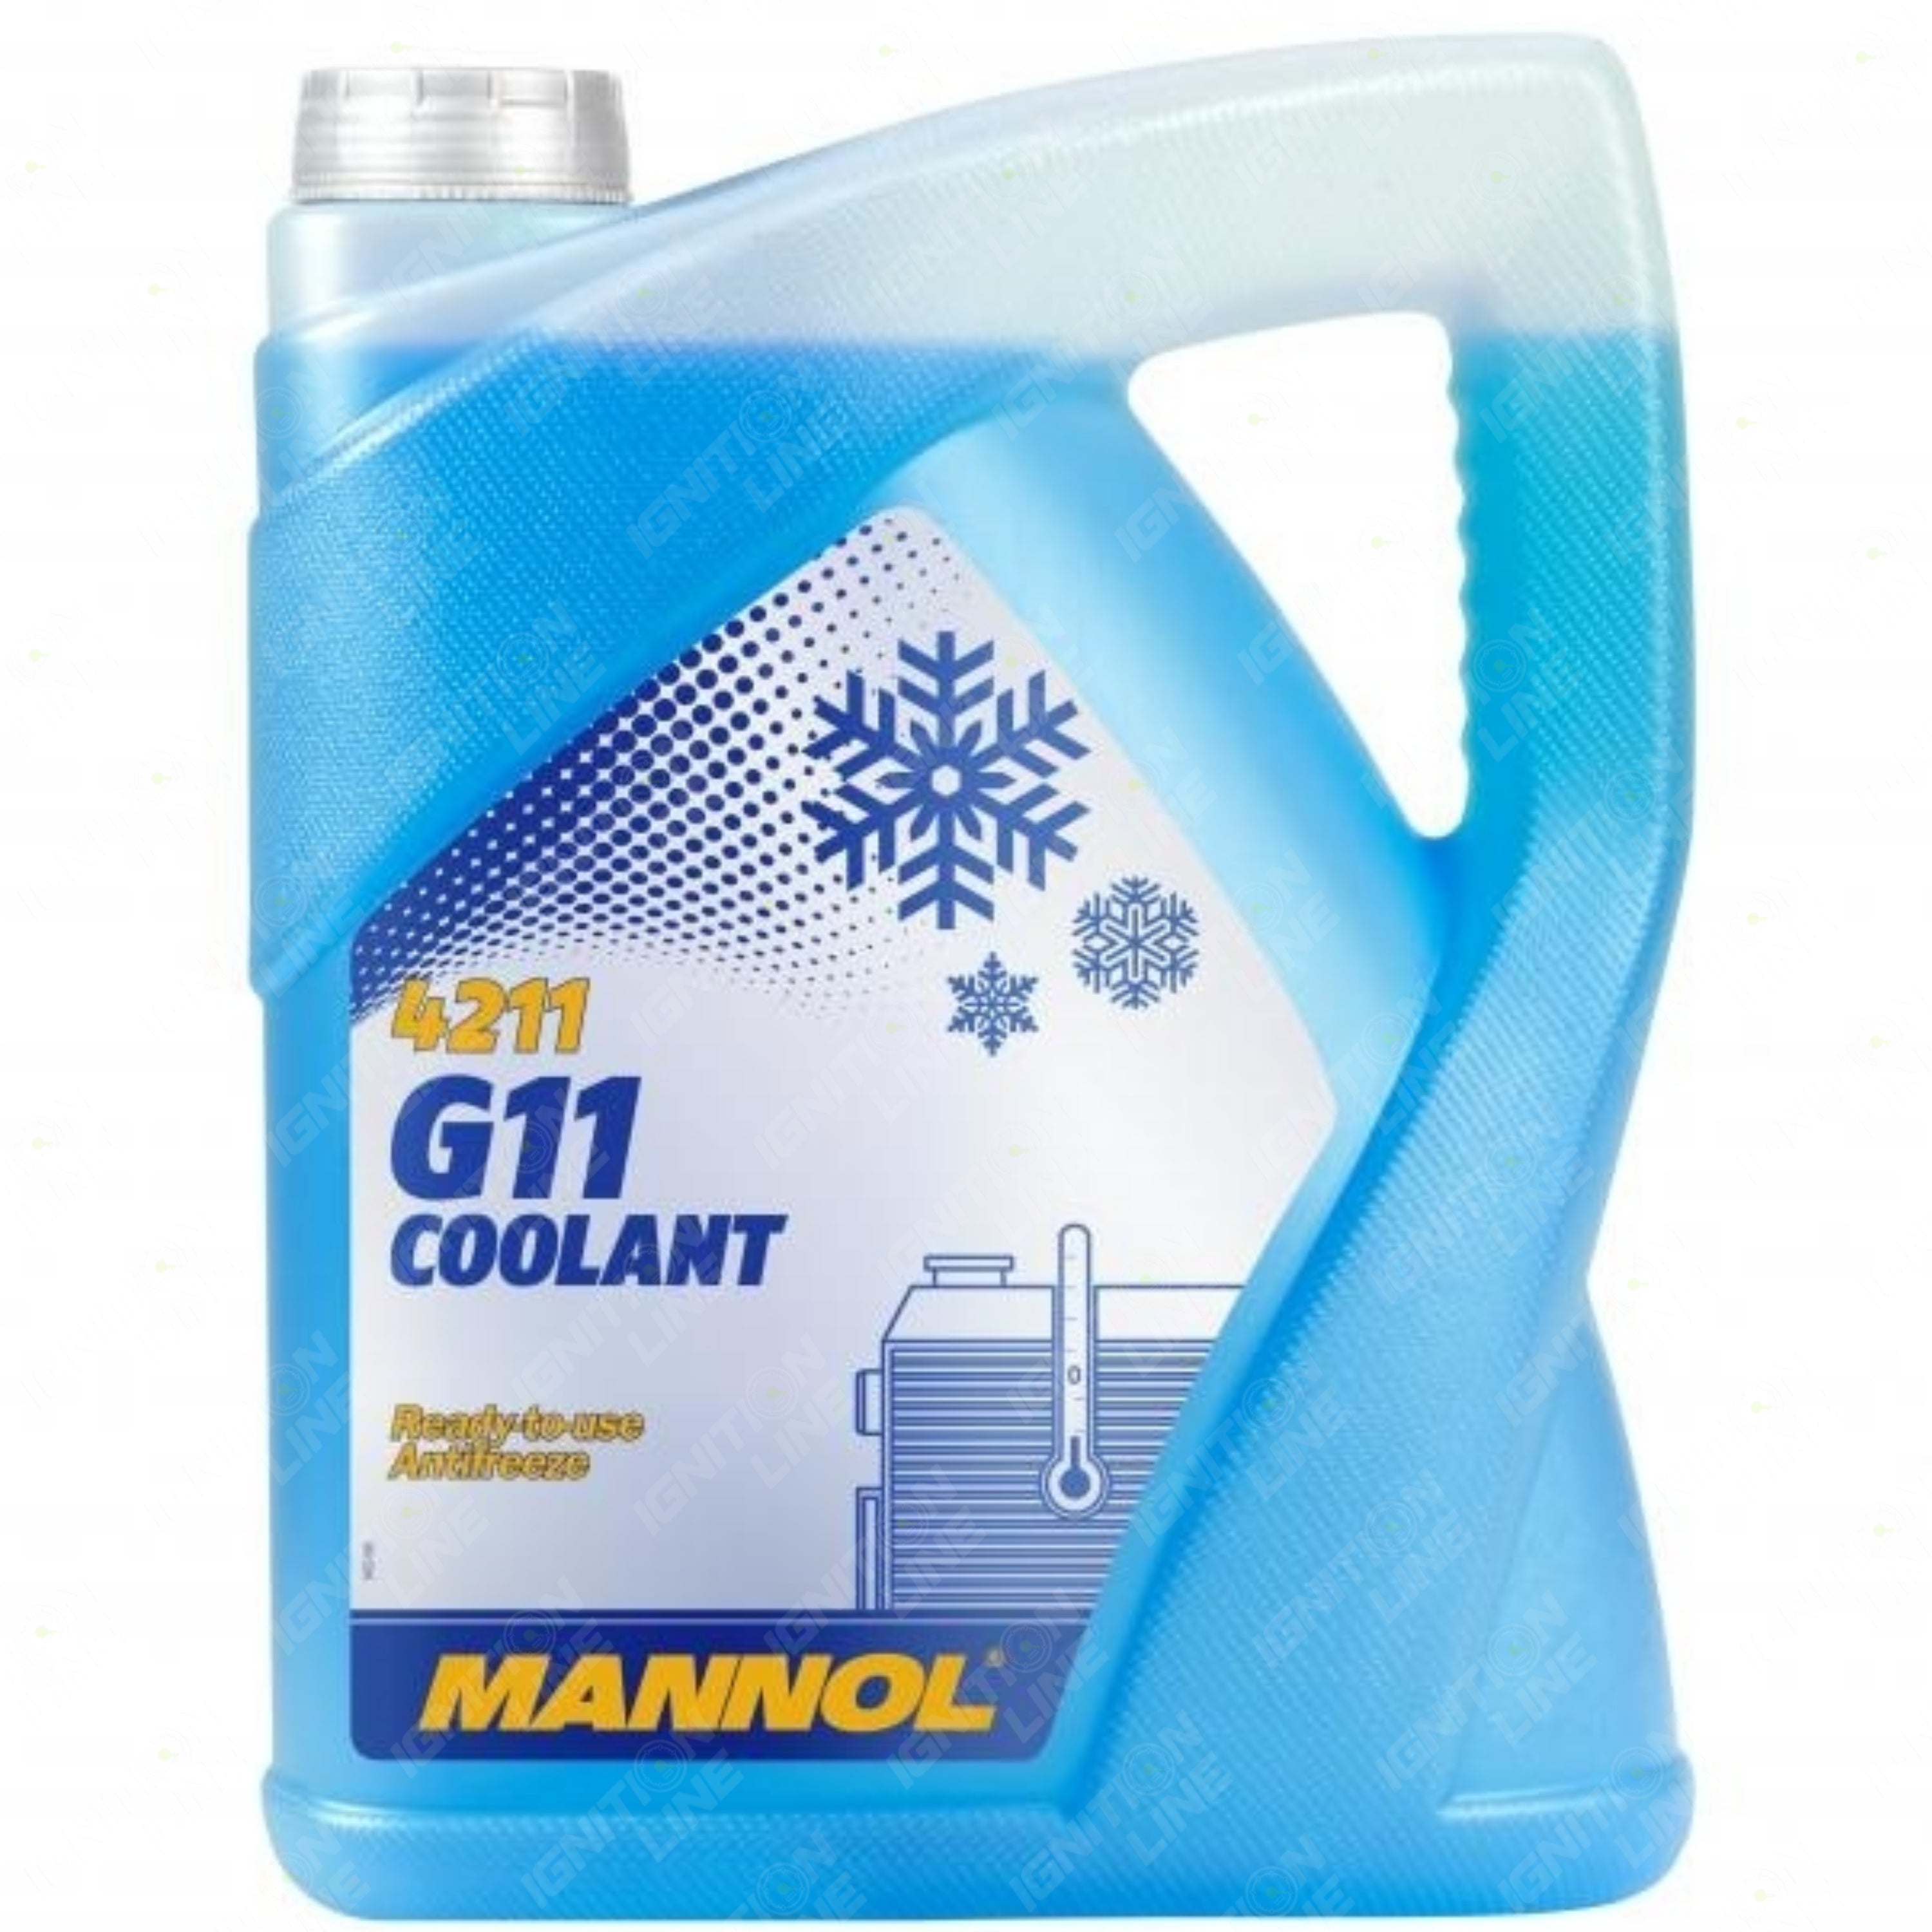 MANNOL Coolant G11 5 Litre